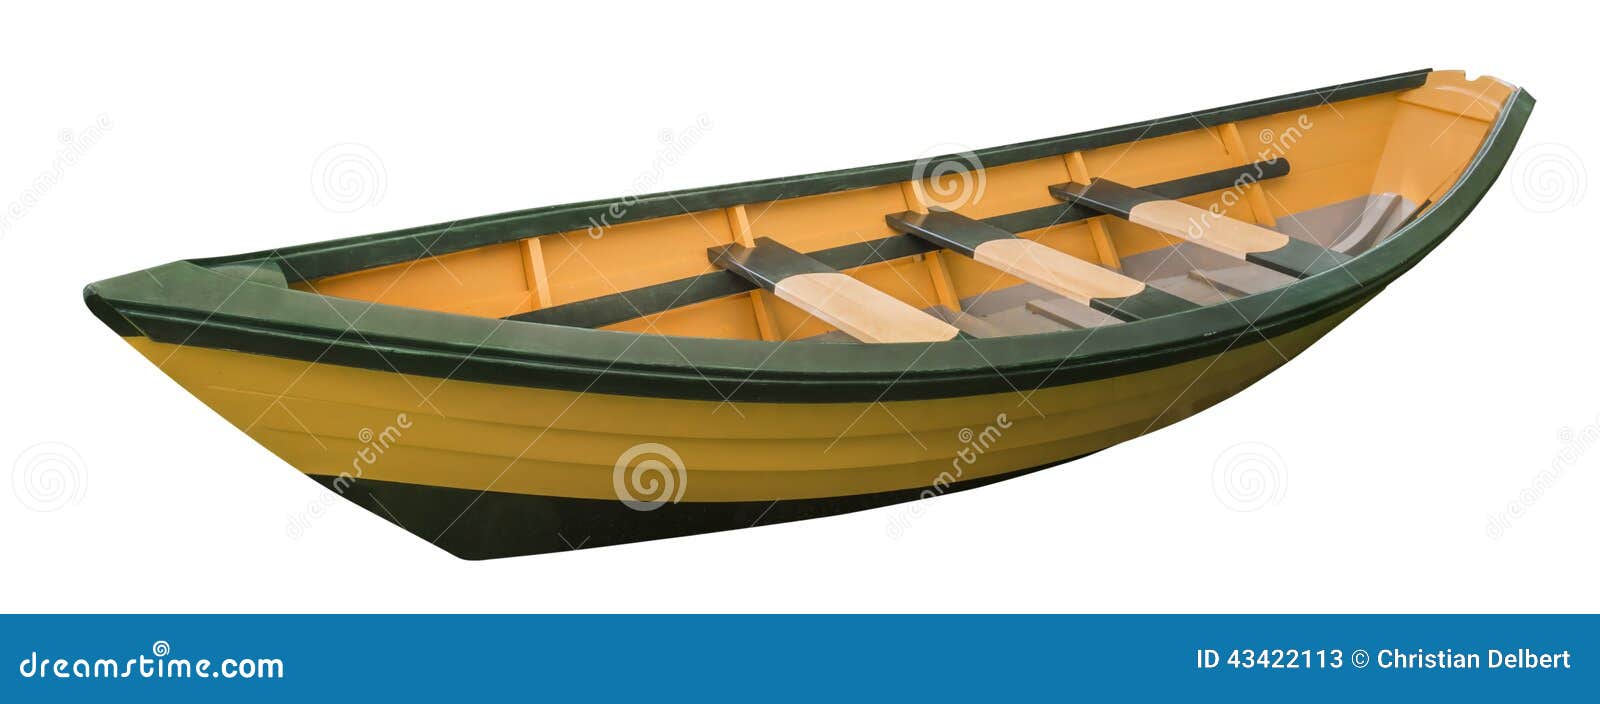 Dory rowboat, isolated stock image. Image of fishermen ...